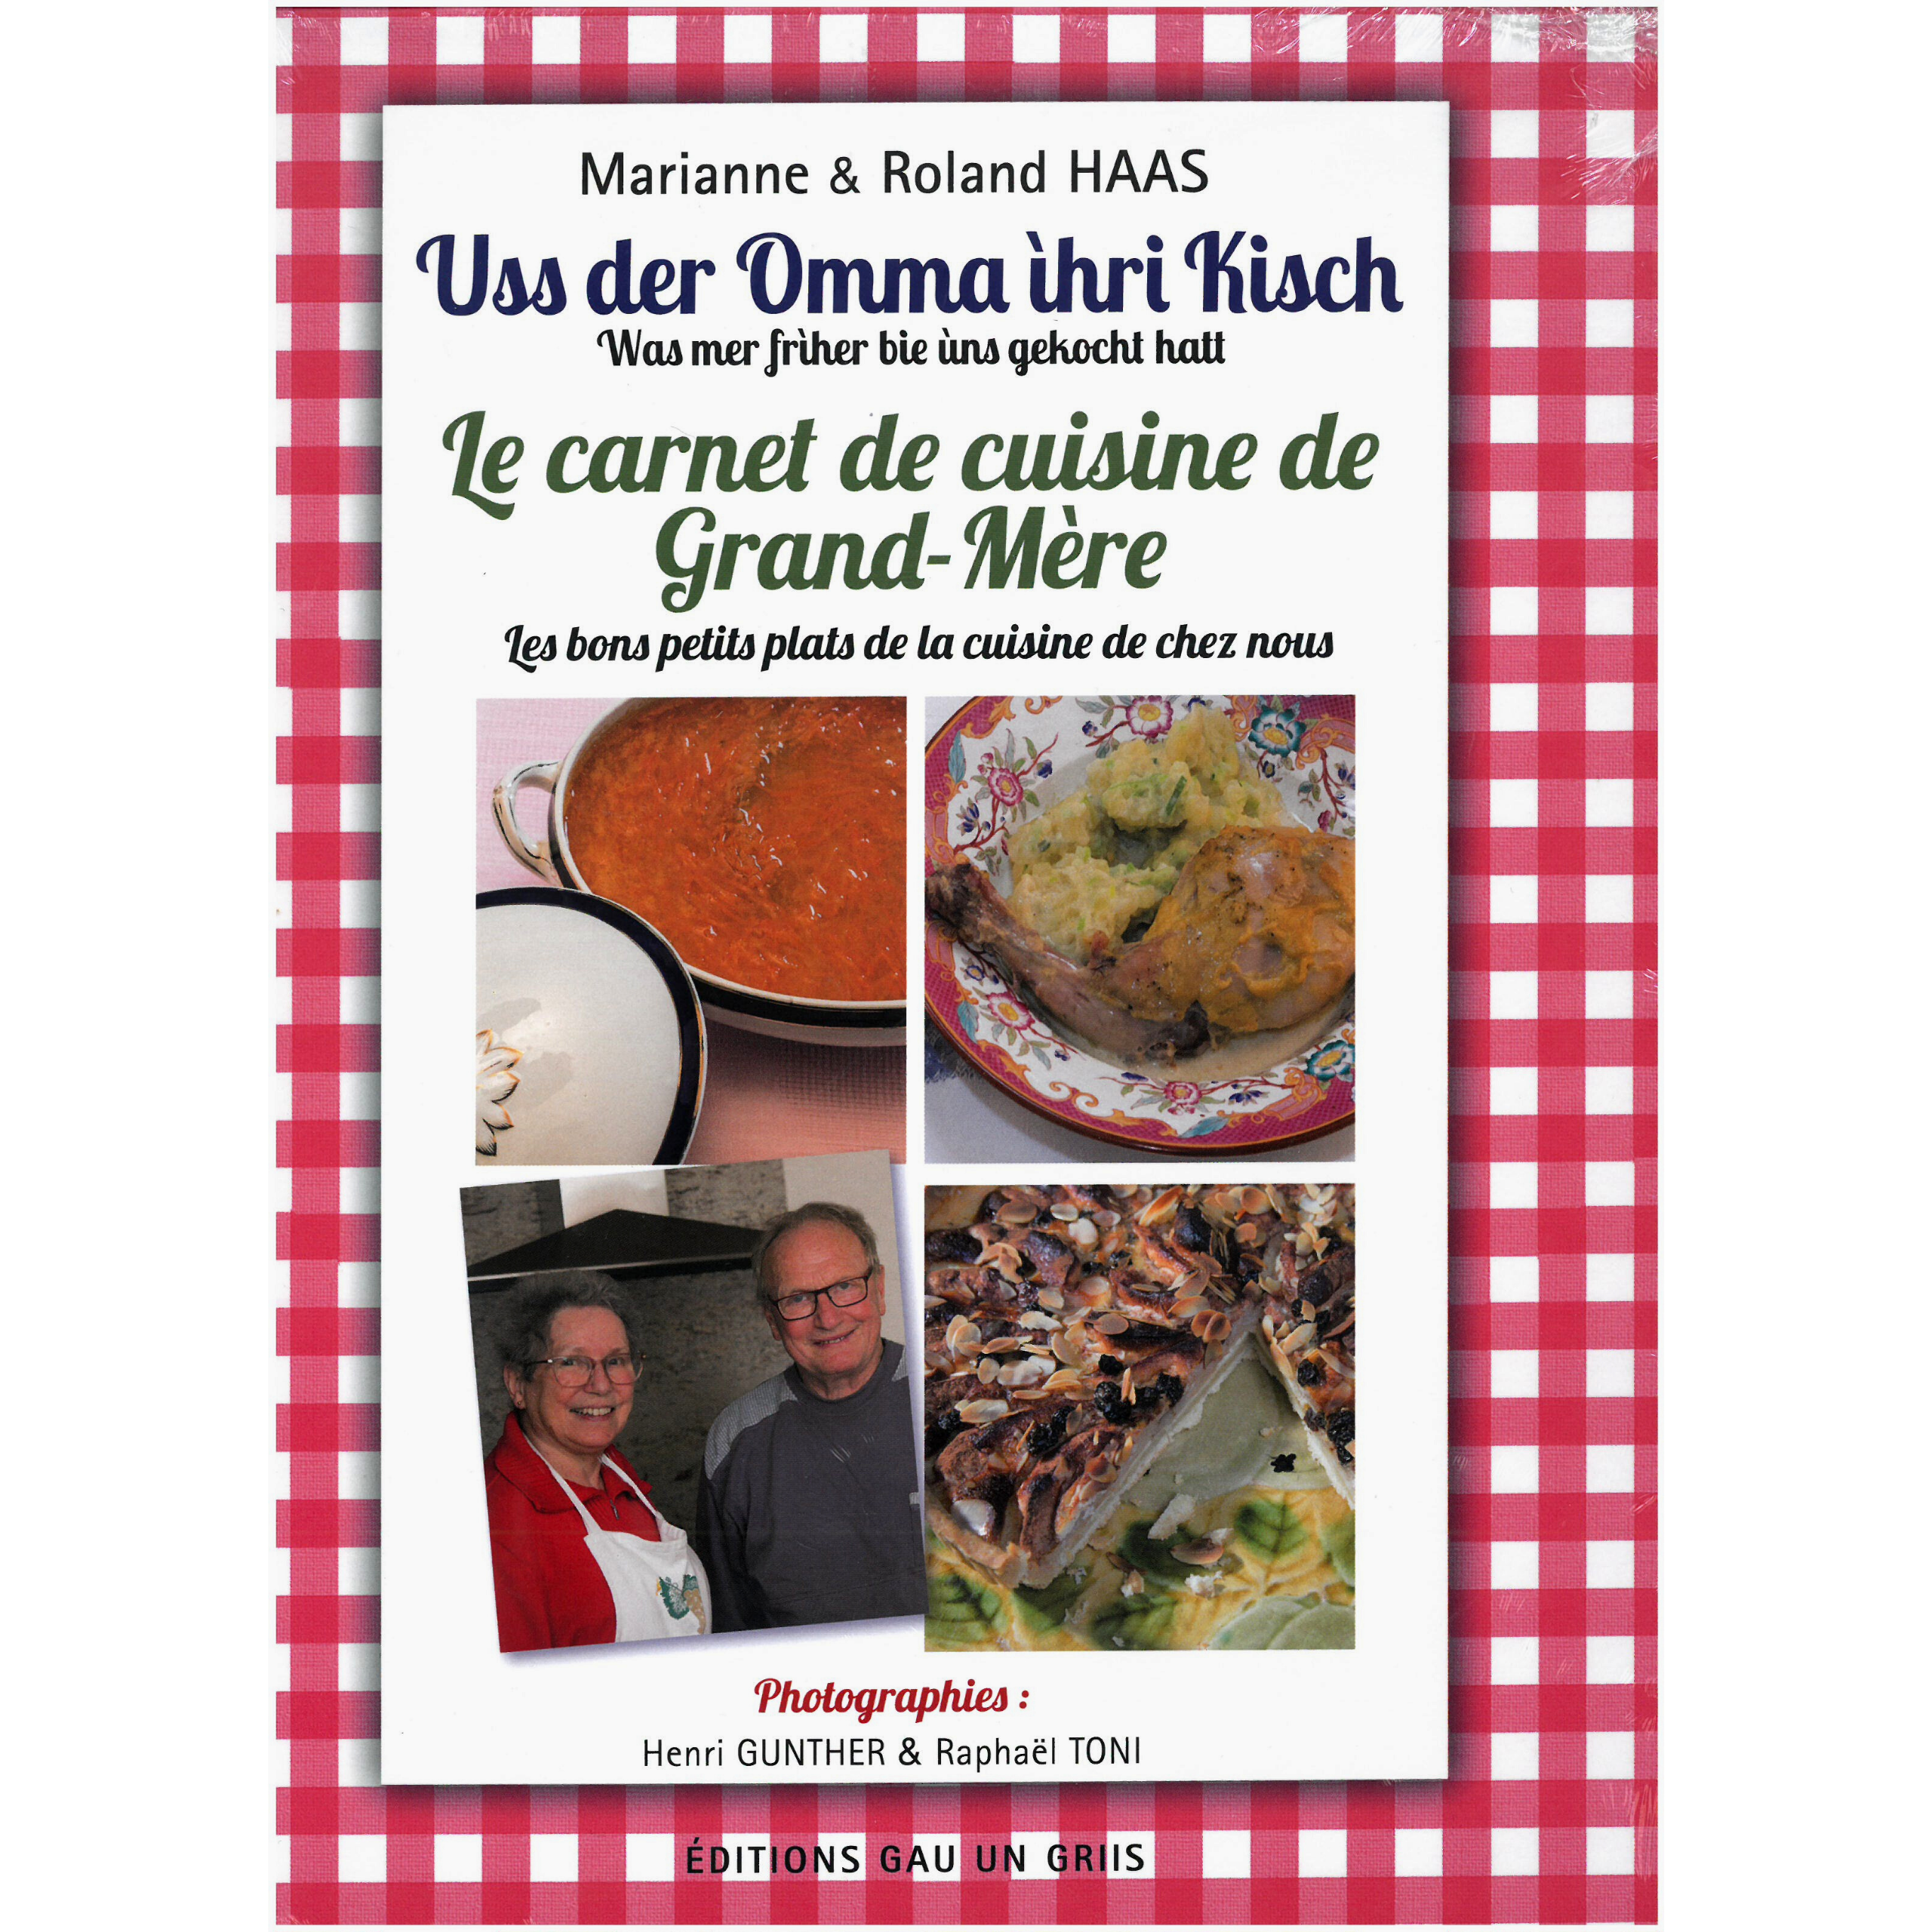 Le carnet de cuisine de grand-mère - Office de tourisme de Saint